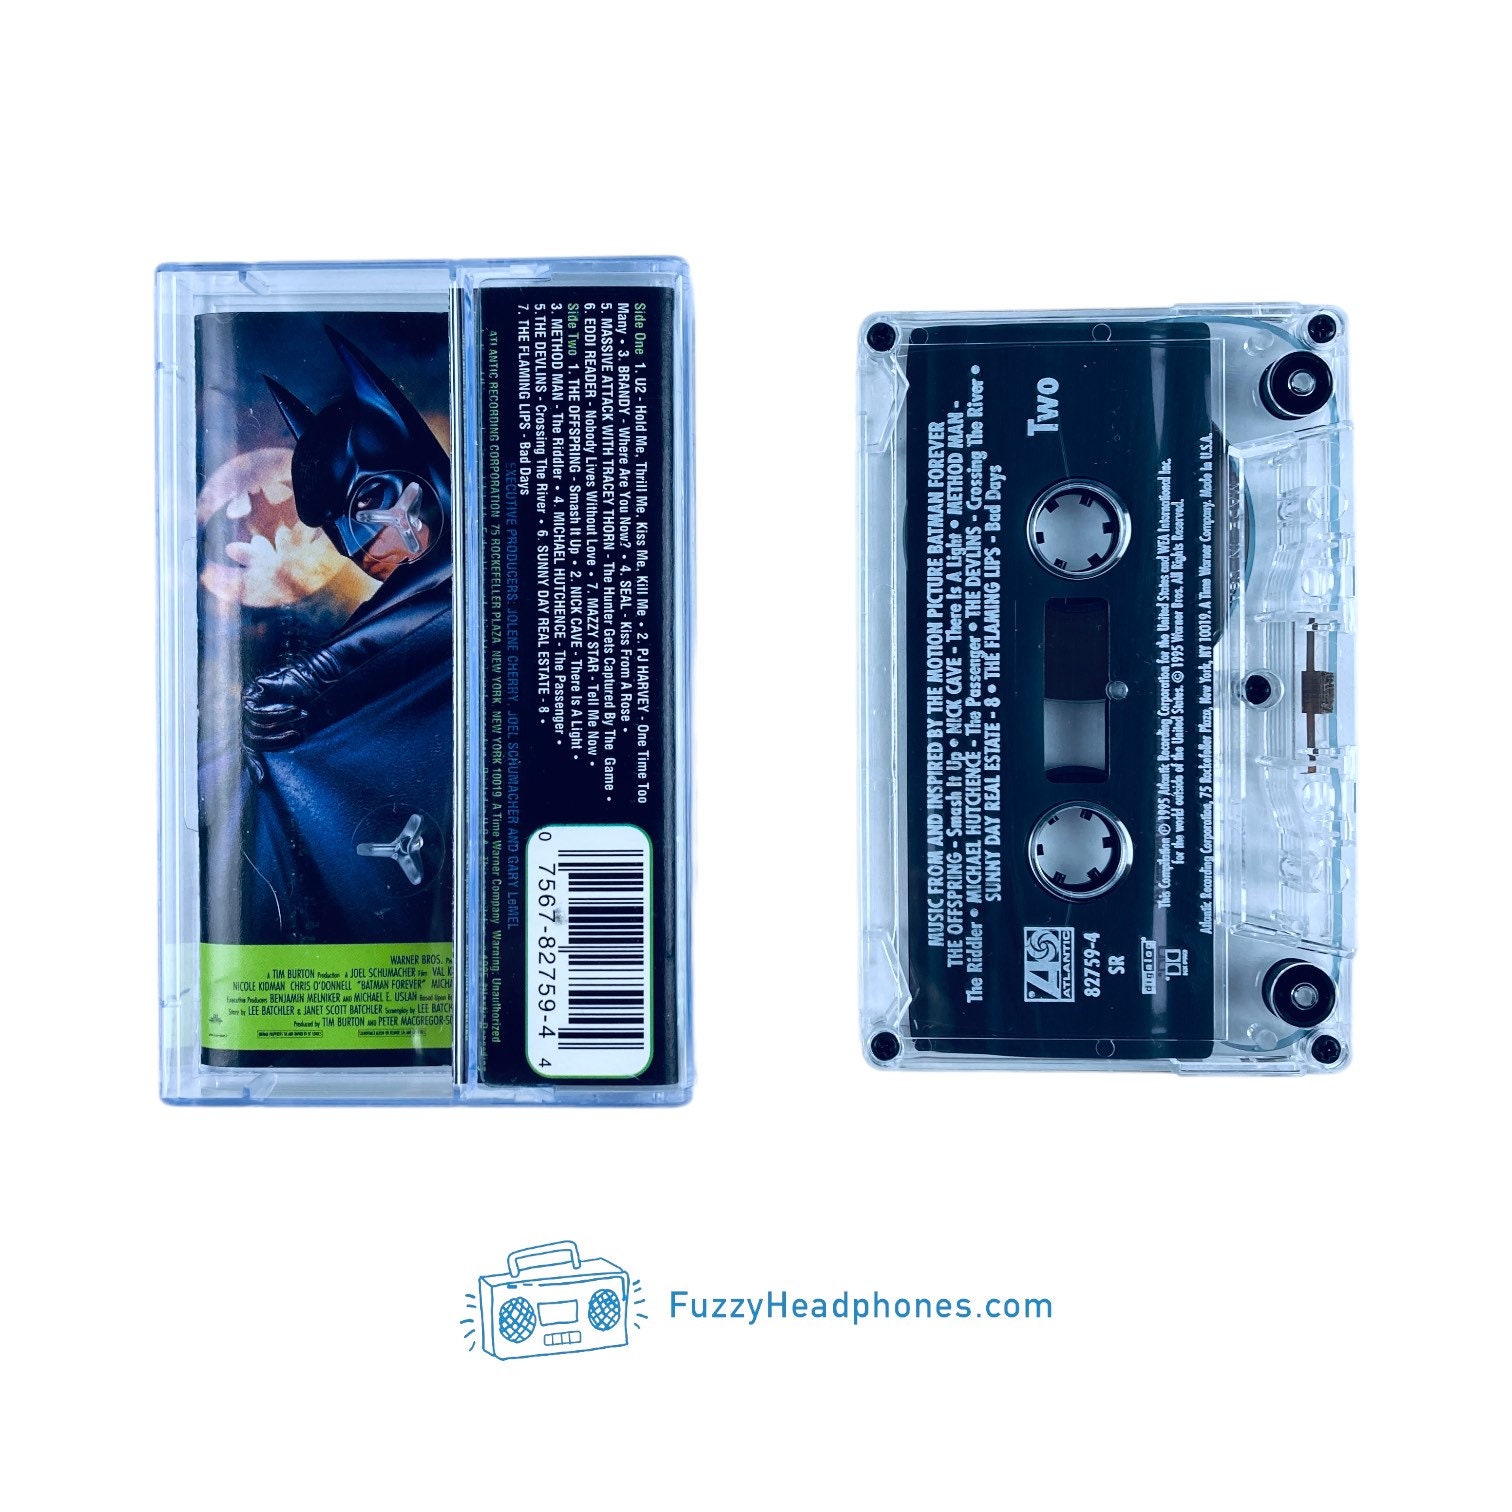 Batman Forever Soundtrack Cassette Tape 1995 Tested & - Etsy Ireland